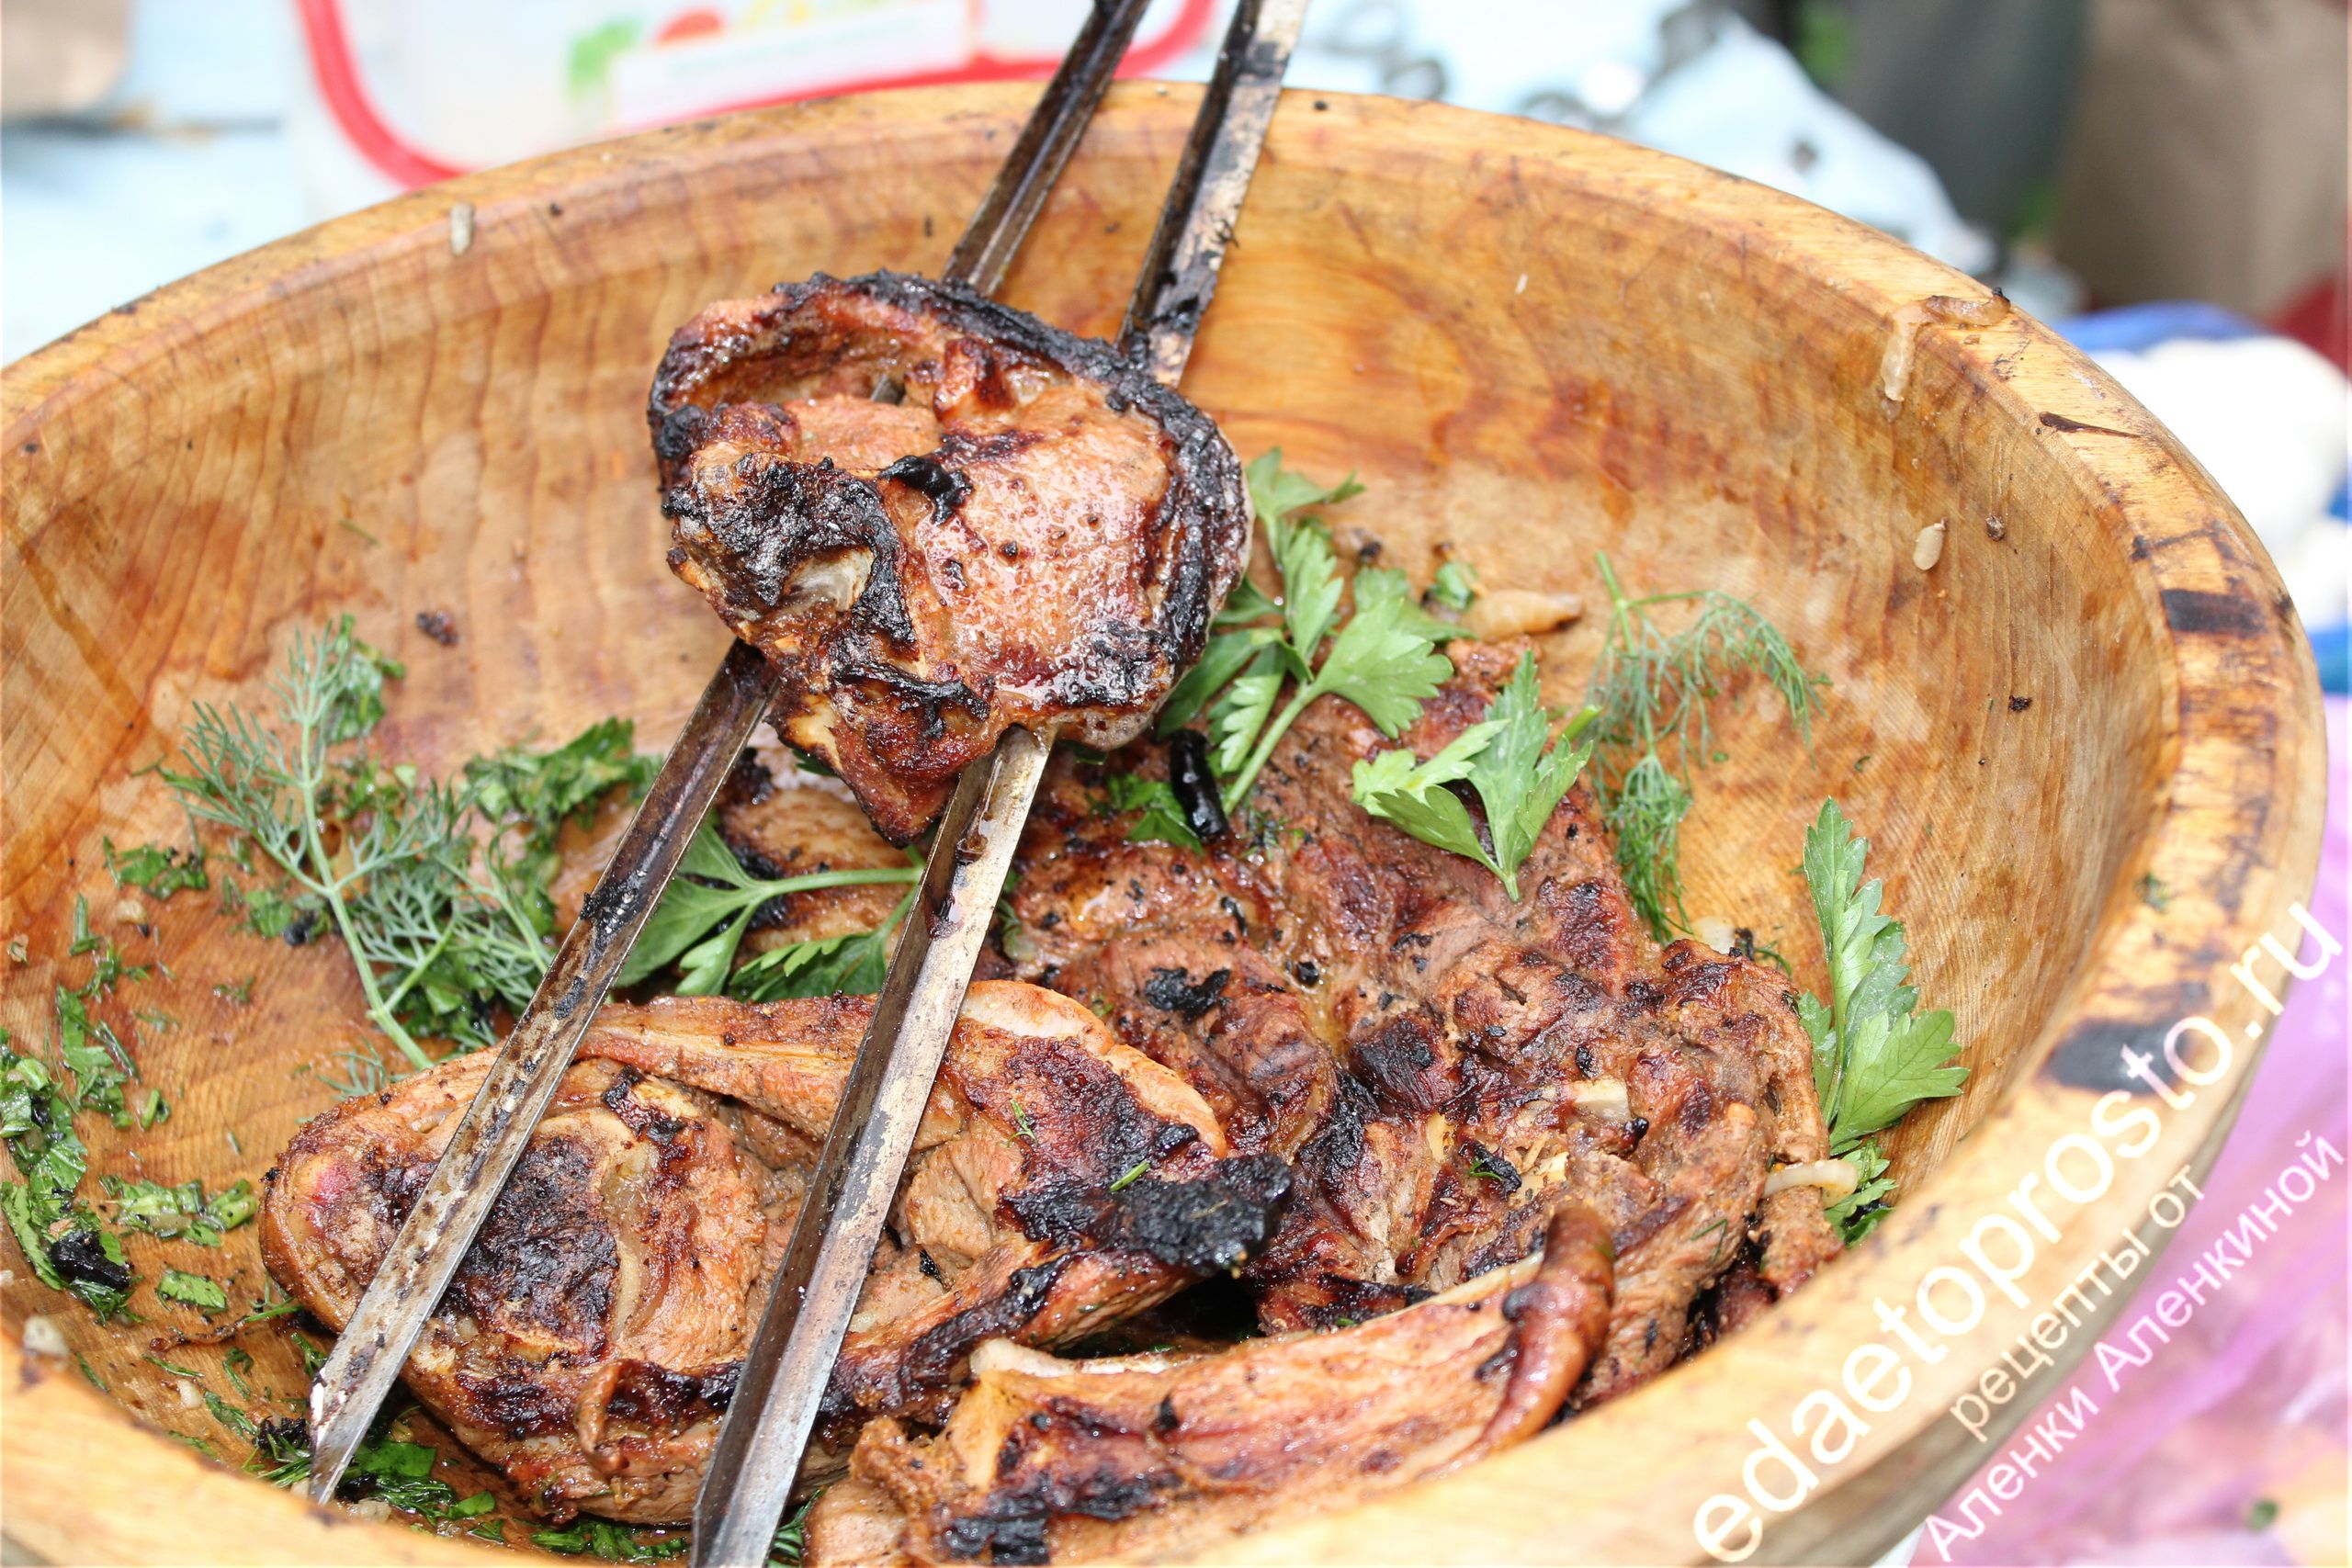 готовые куски мяса в деревянной миске, фото шашлыков 8